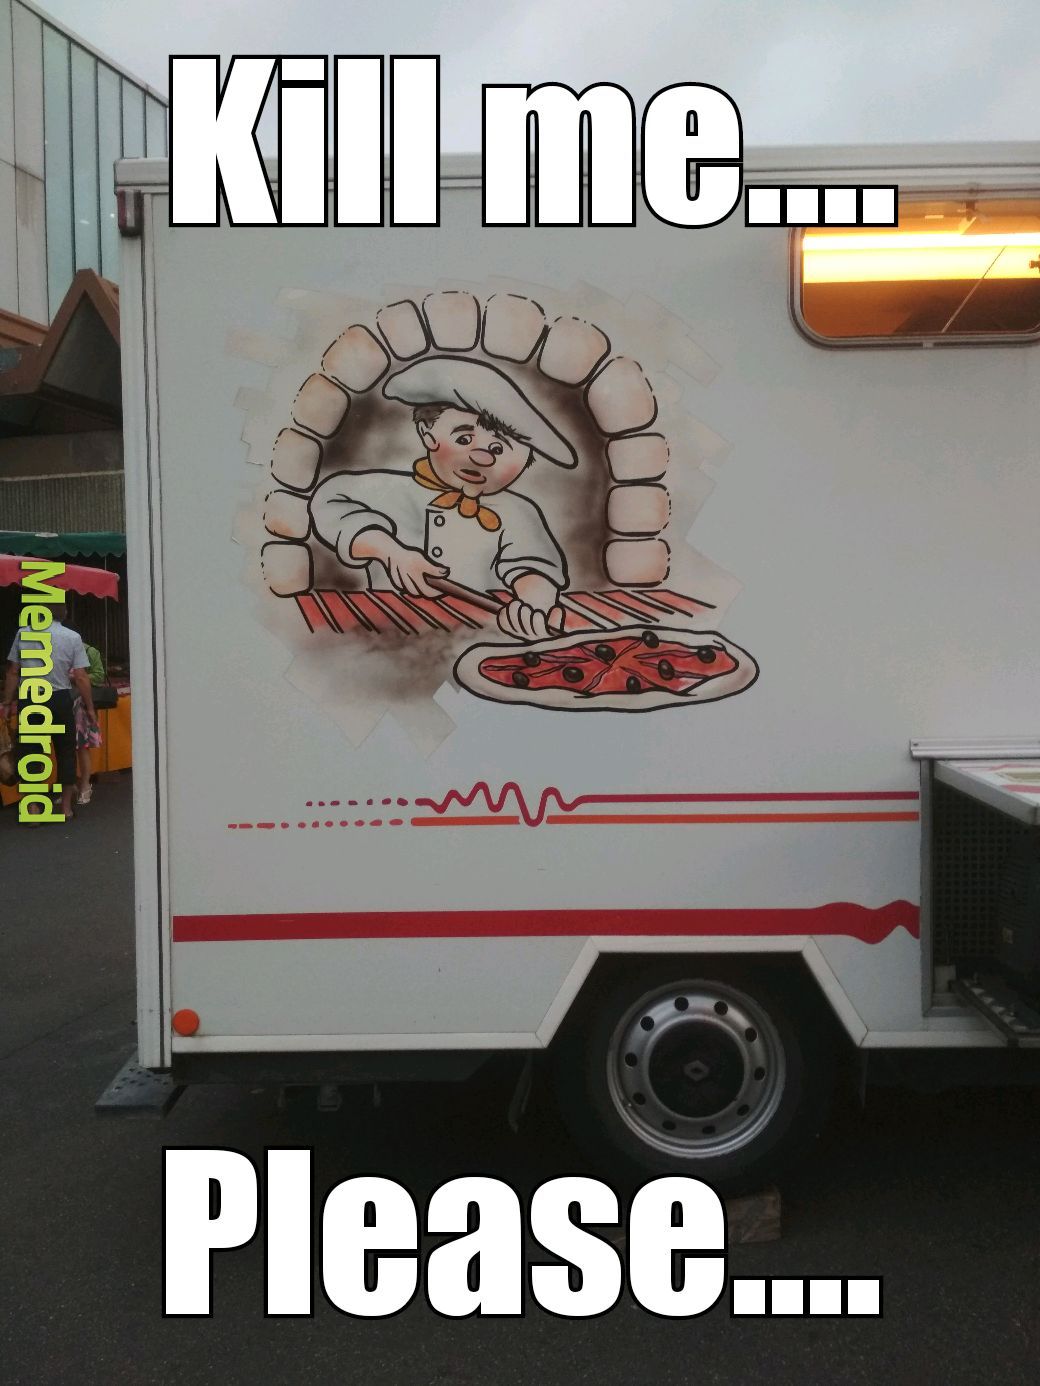 Ce camion a pizza donne vraiment envie (bry sur marne) - meme